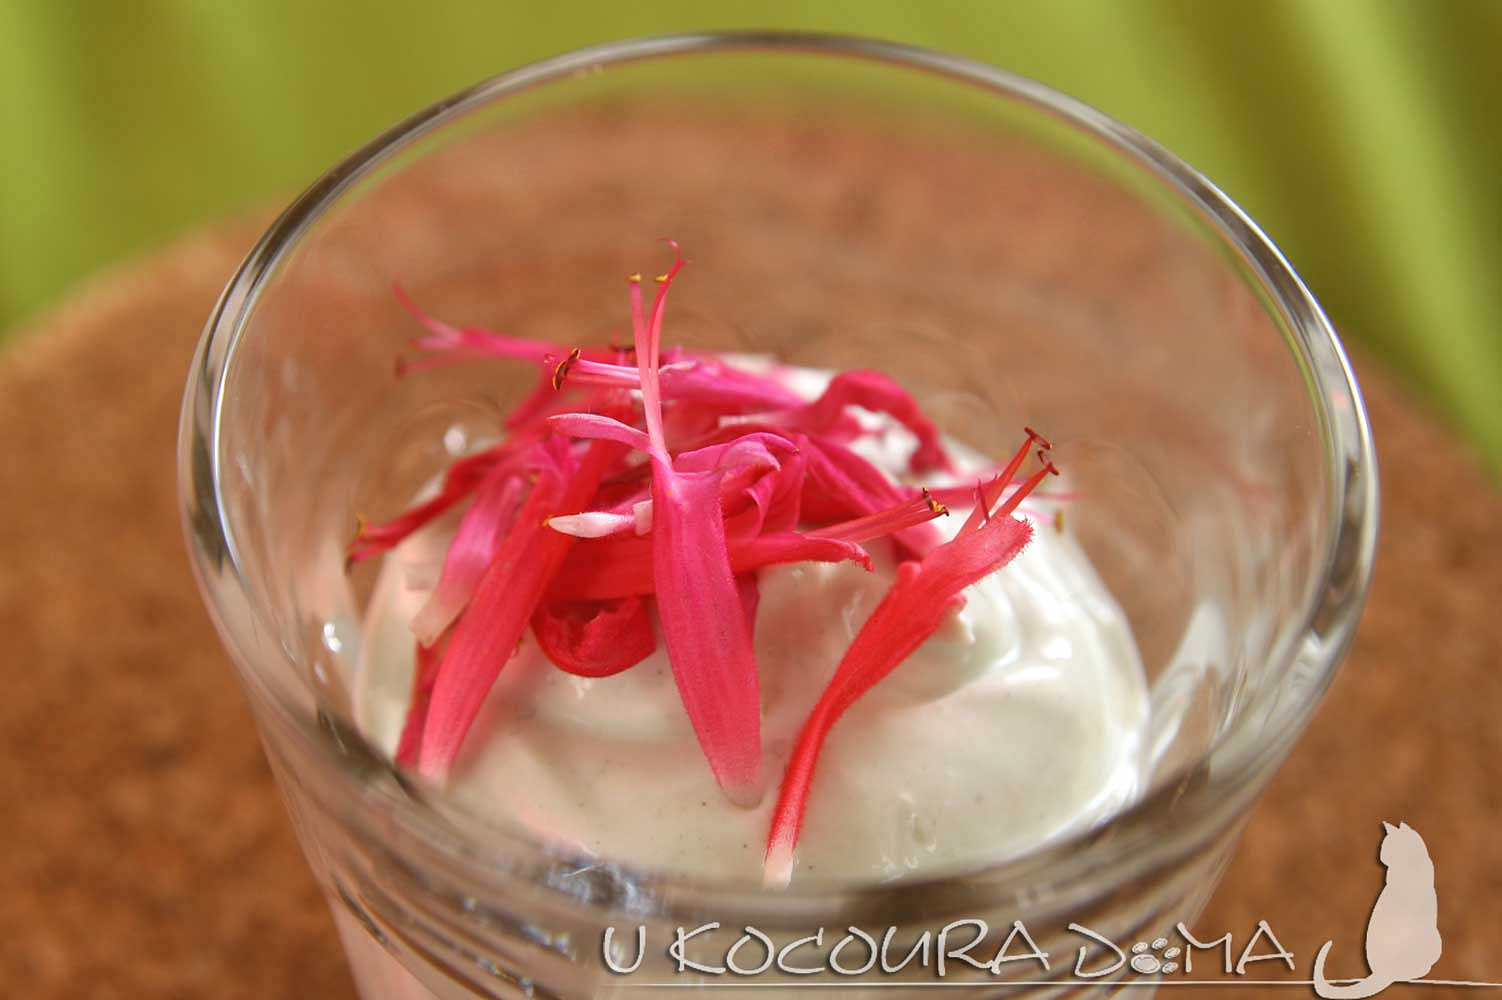 Jednoduchý jogurtový dezert zasypaný kvítky šalvěje ananasové